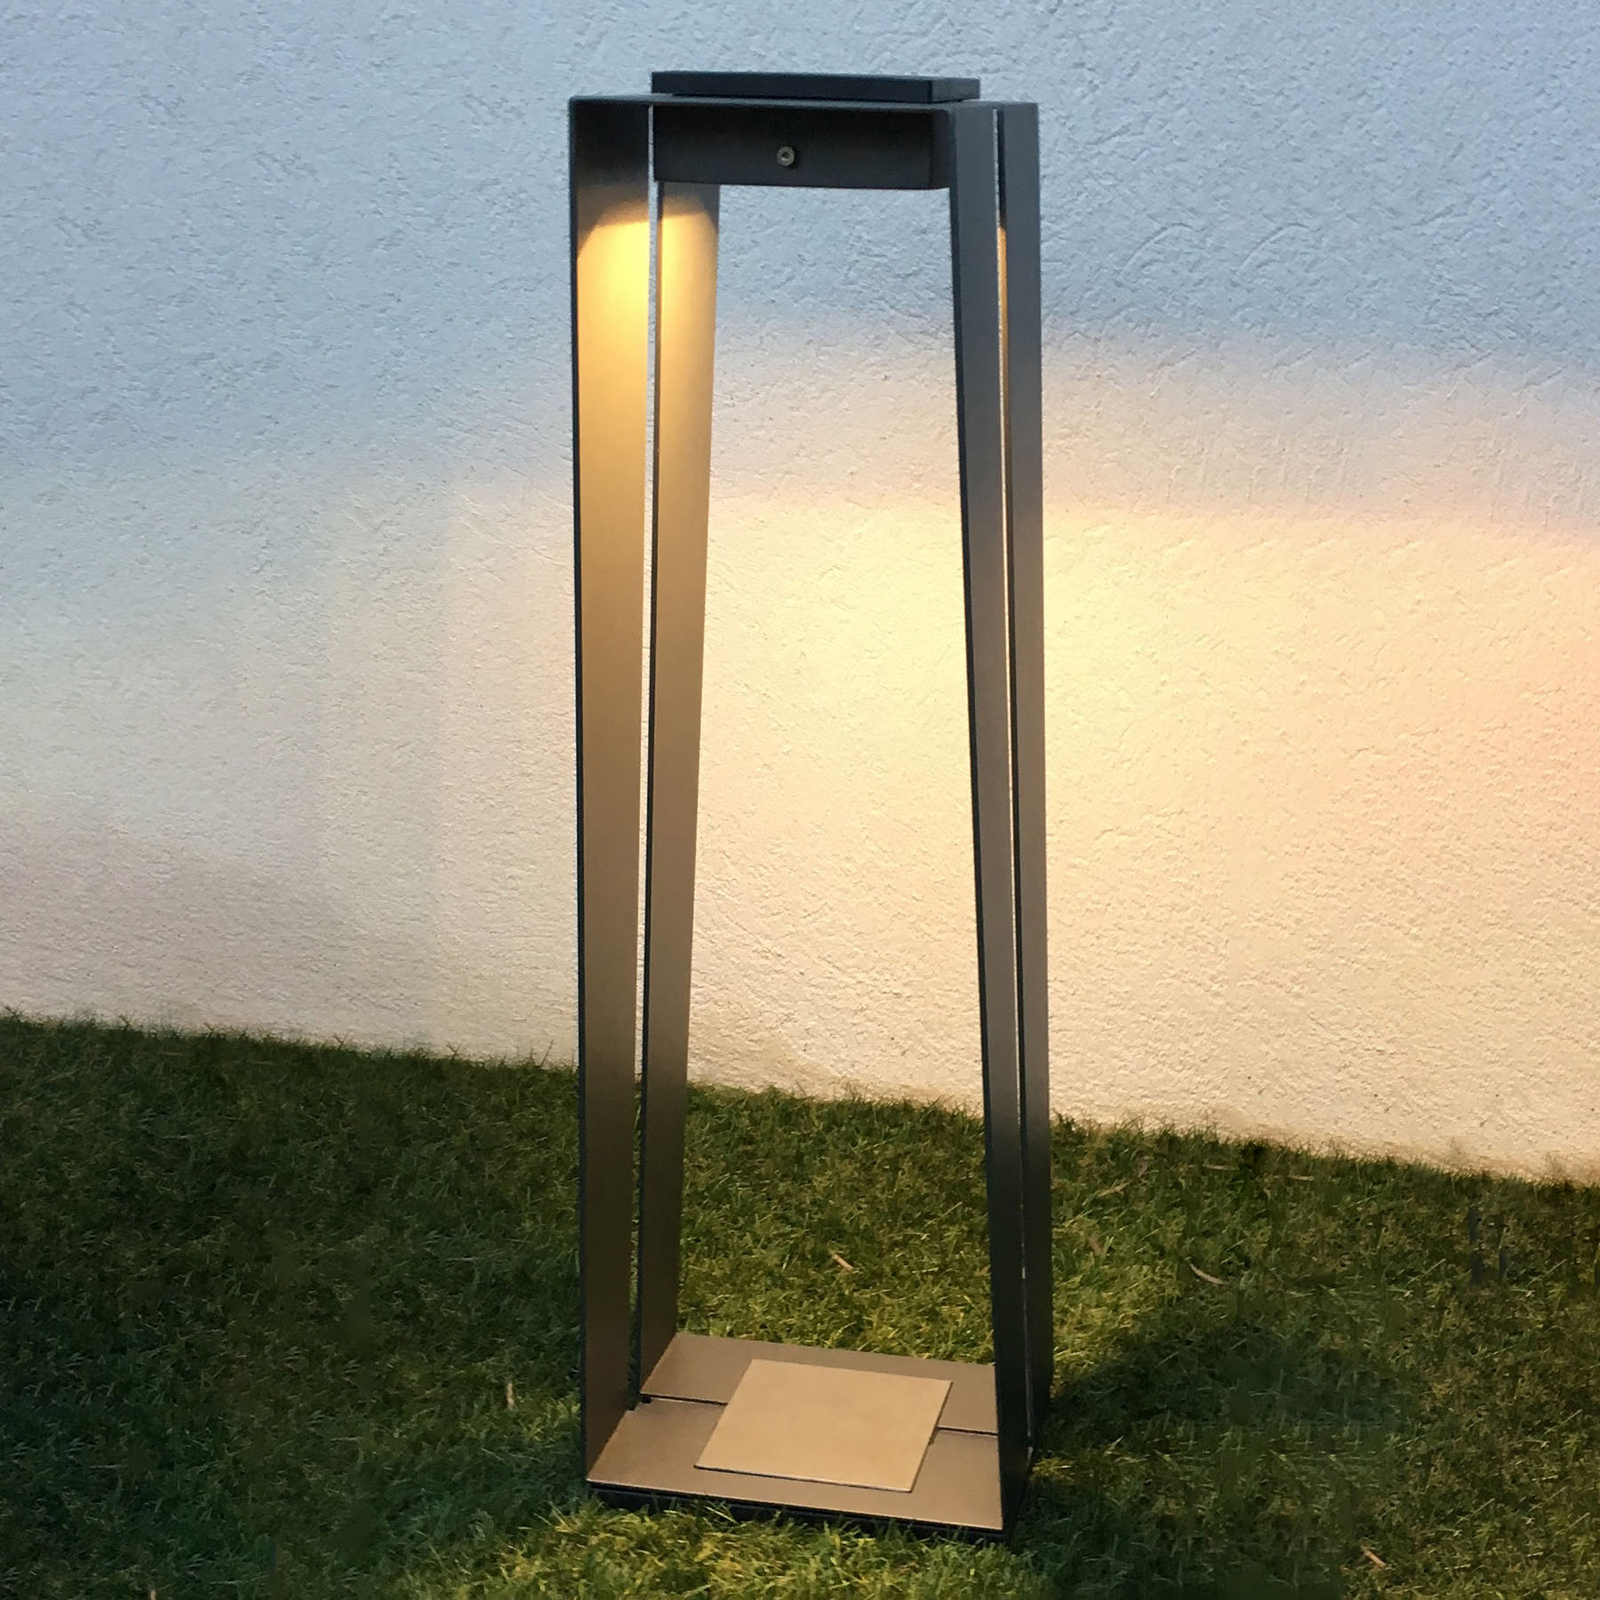 LED-solcellslampa Skaal av aluminium, 70 cm, grå